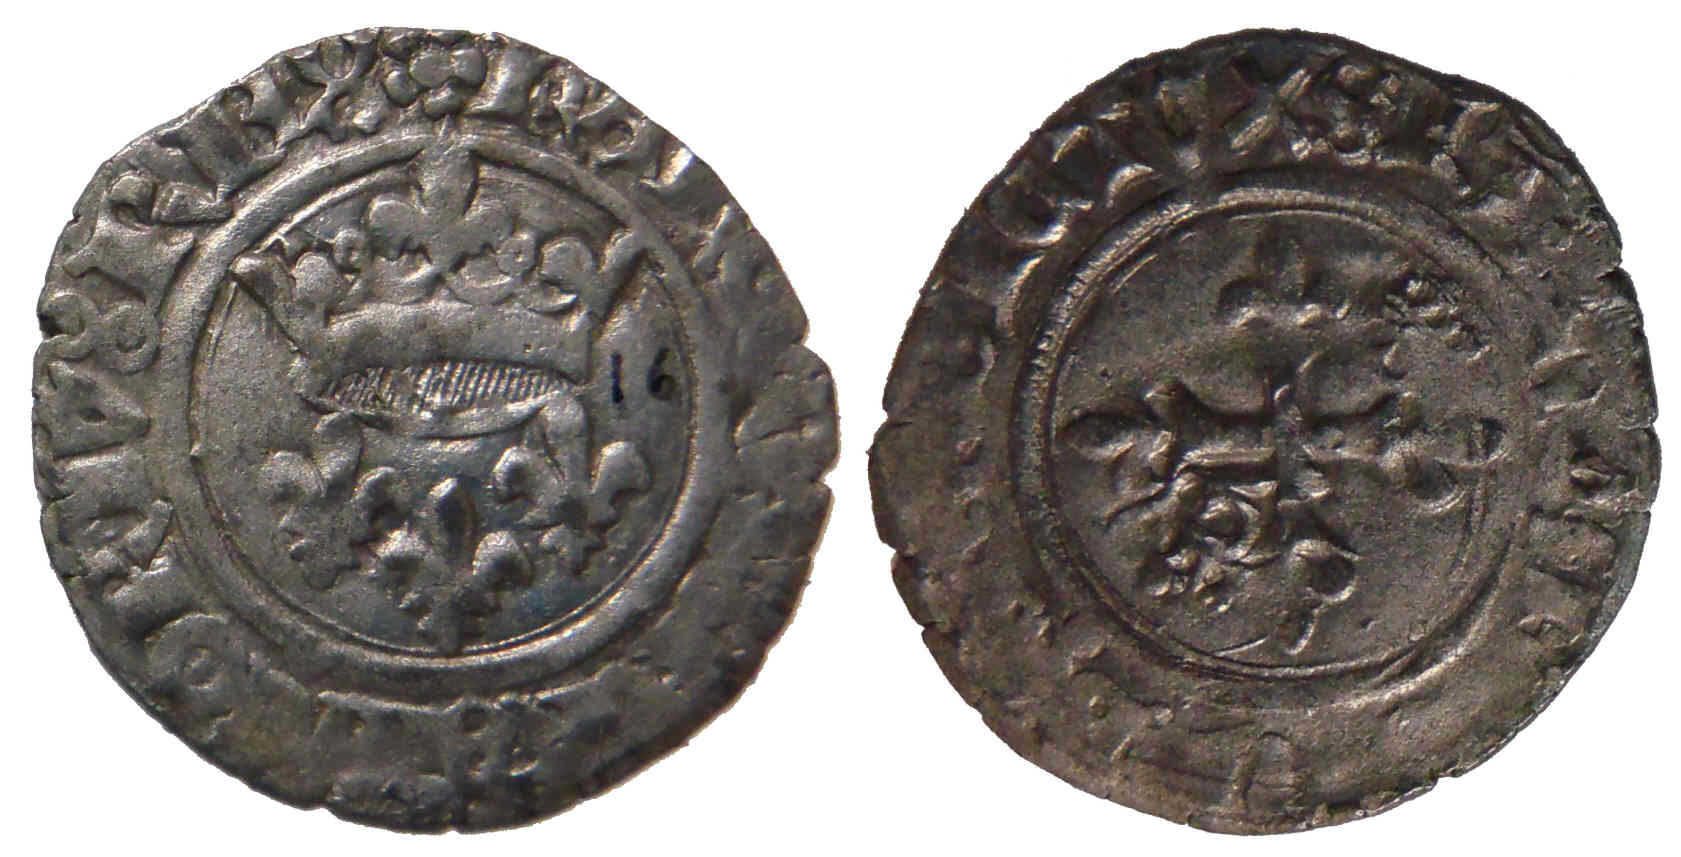 Approche typologique et chronologique des émissions de gros dits «florettes» au nom de Charles VI produites à Mâcon entre 1417 et 1421 – partie 12